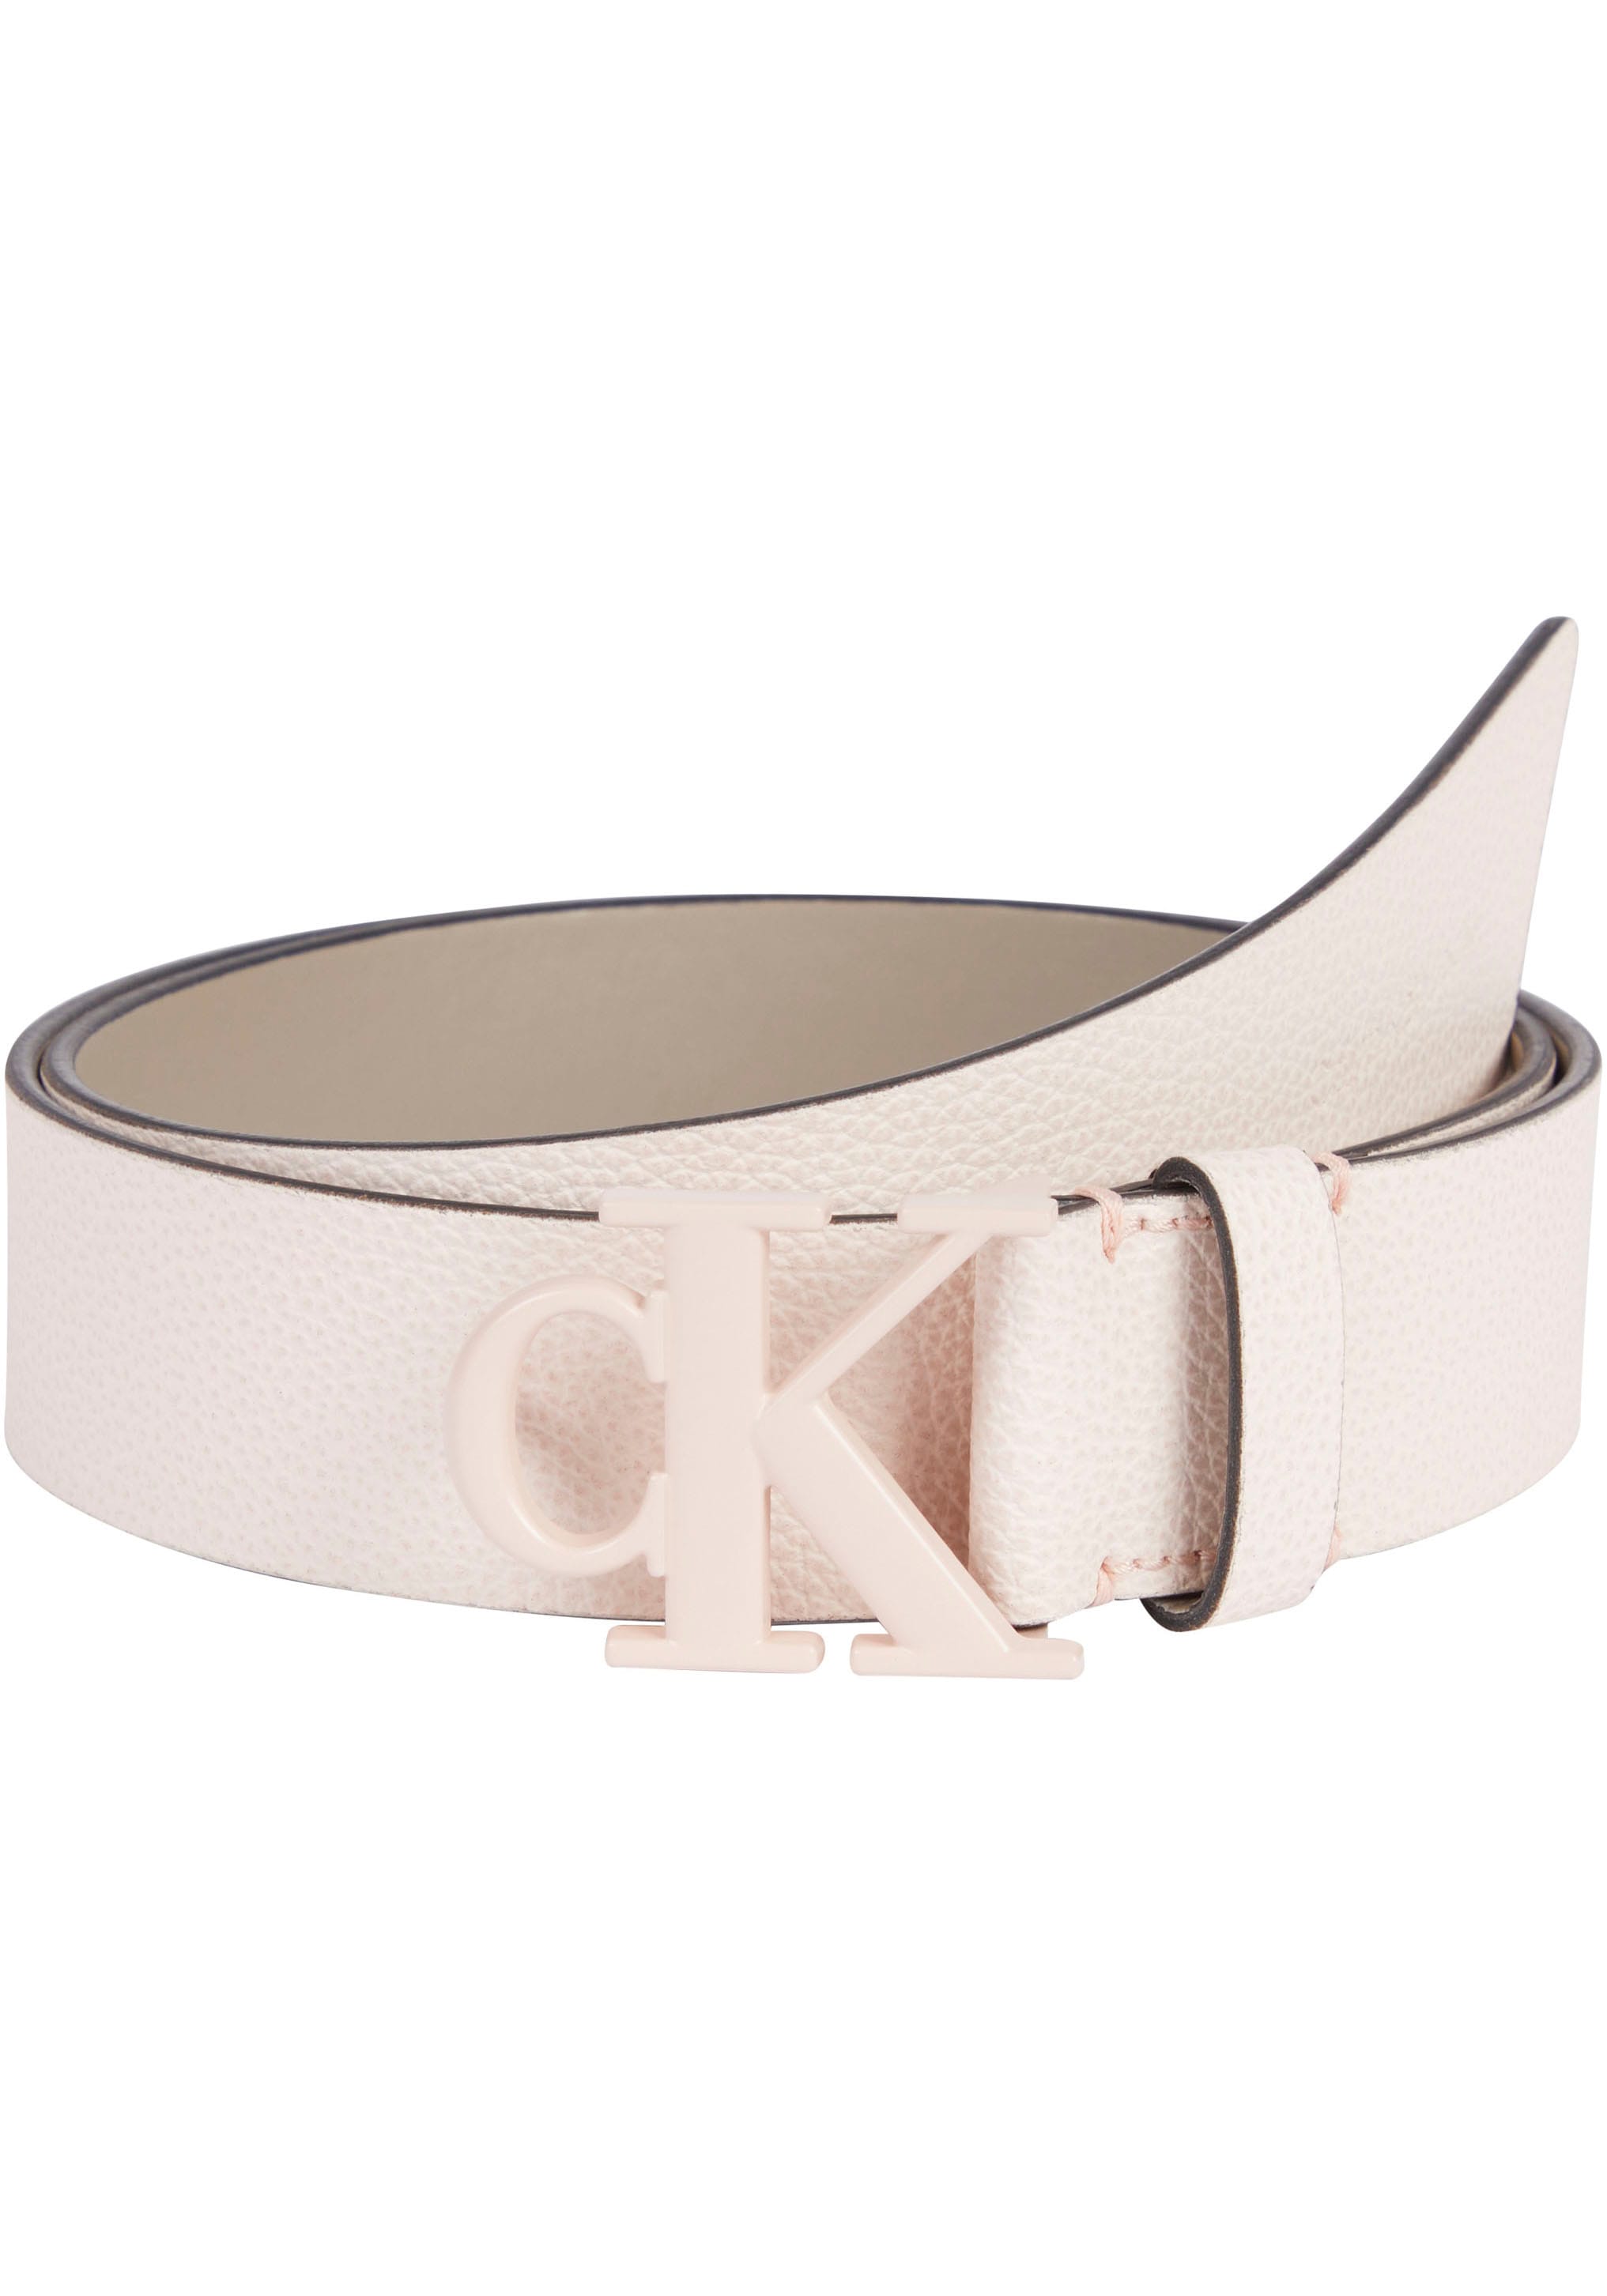 Calvin Klein Jeans online OTTO bei mit CK-Monogrammschnalle Ledergürtel